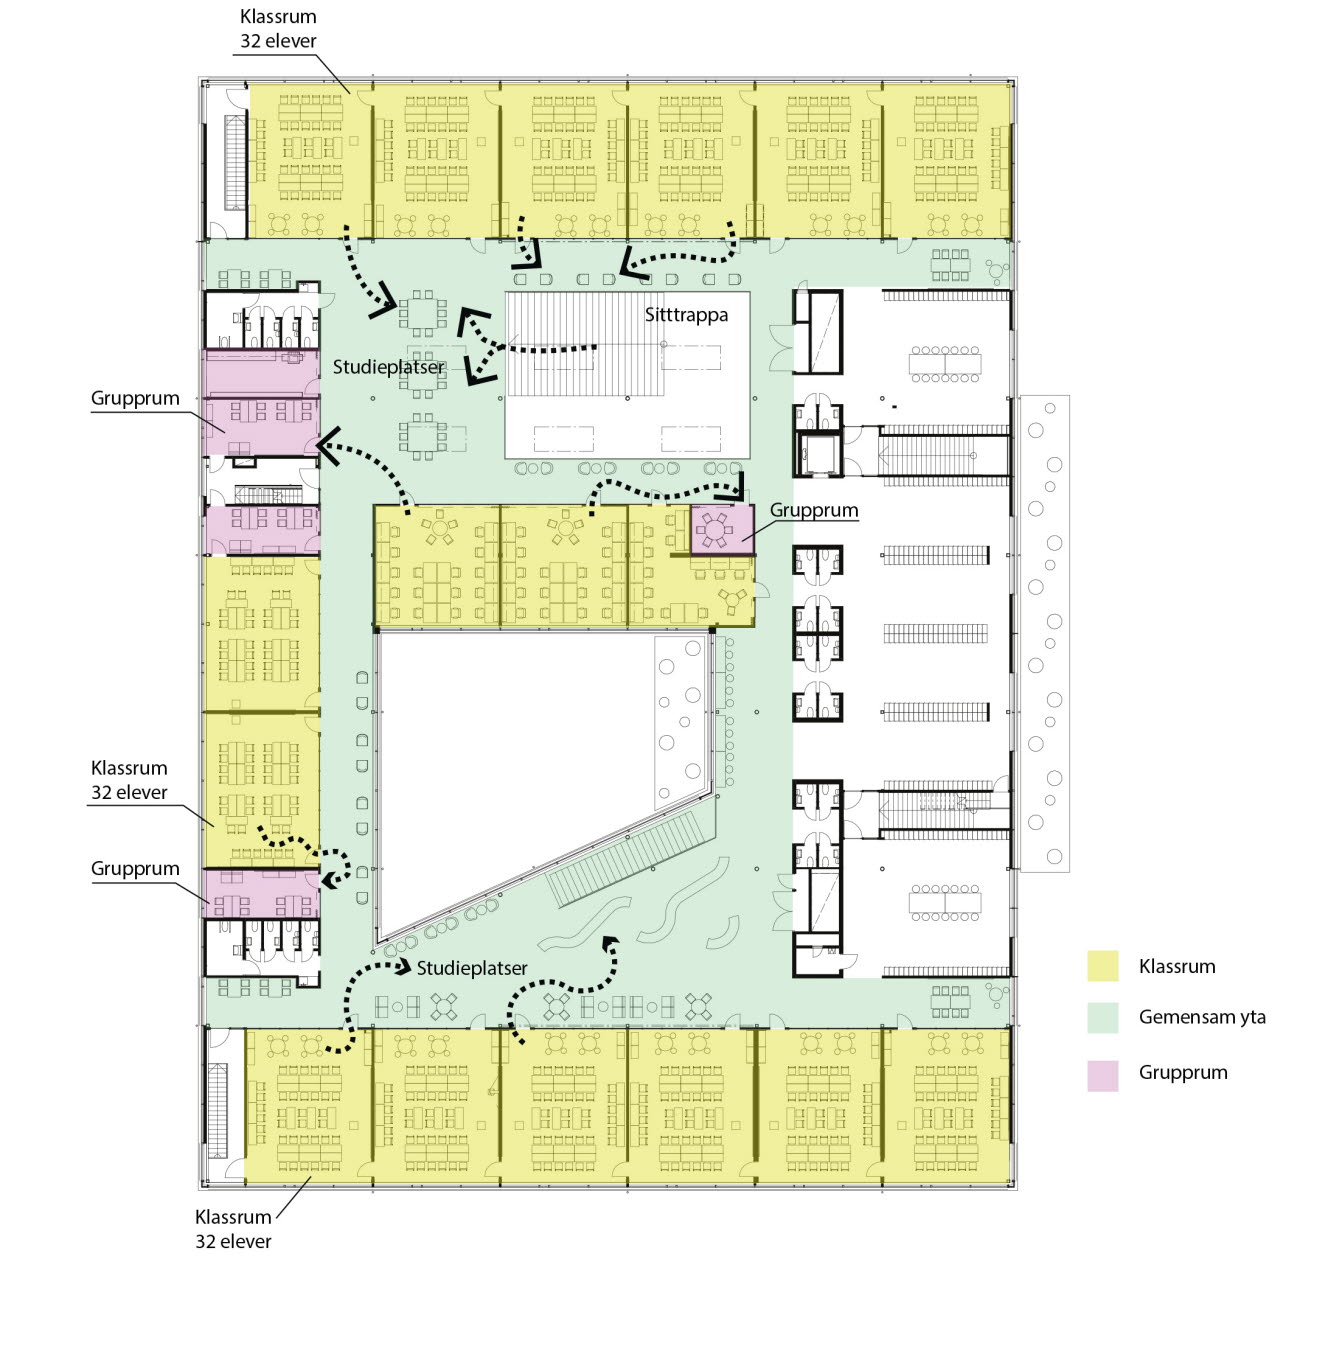 Ritning på våningsplan som visar klassrum, gemensam yta och grupprum.